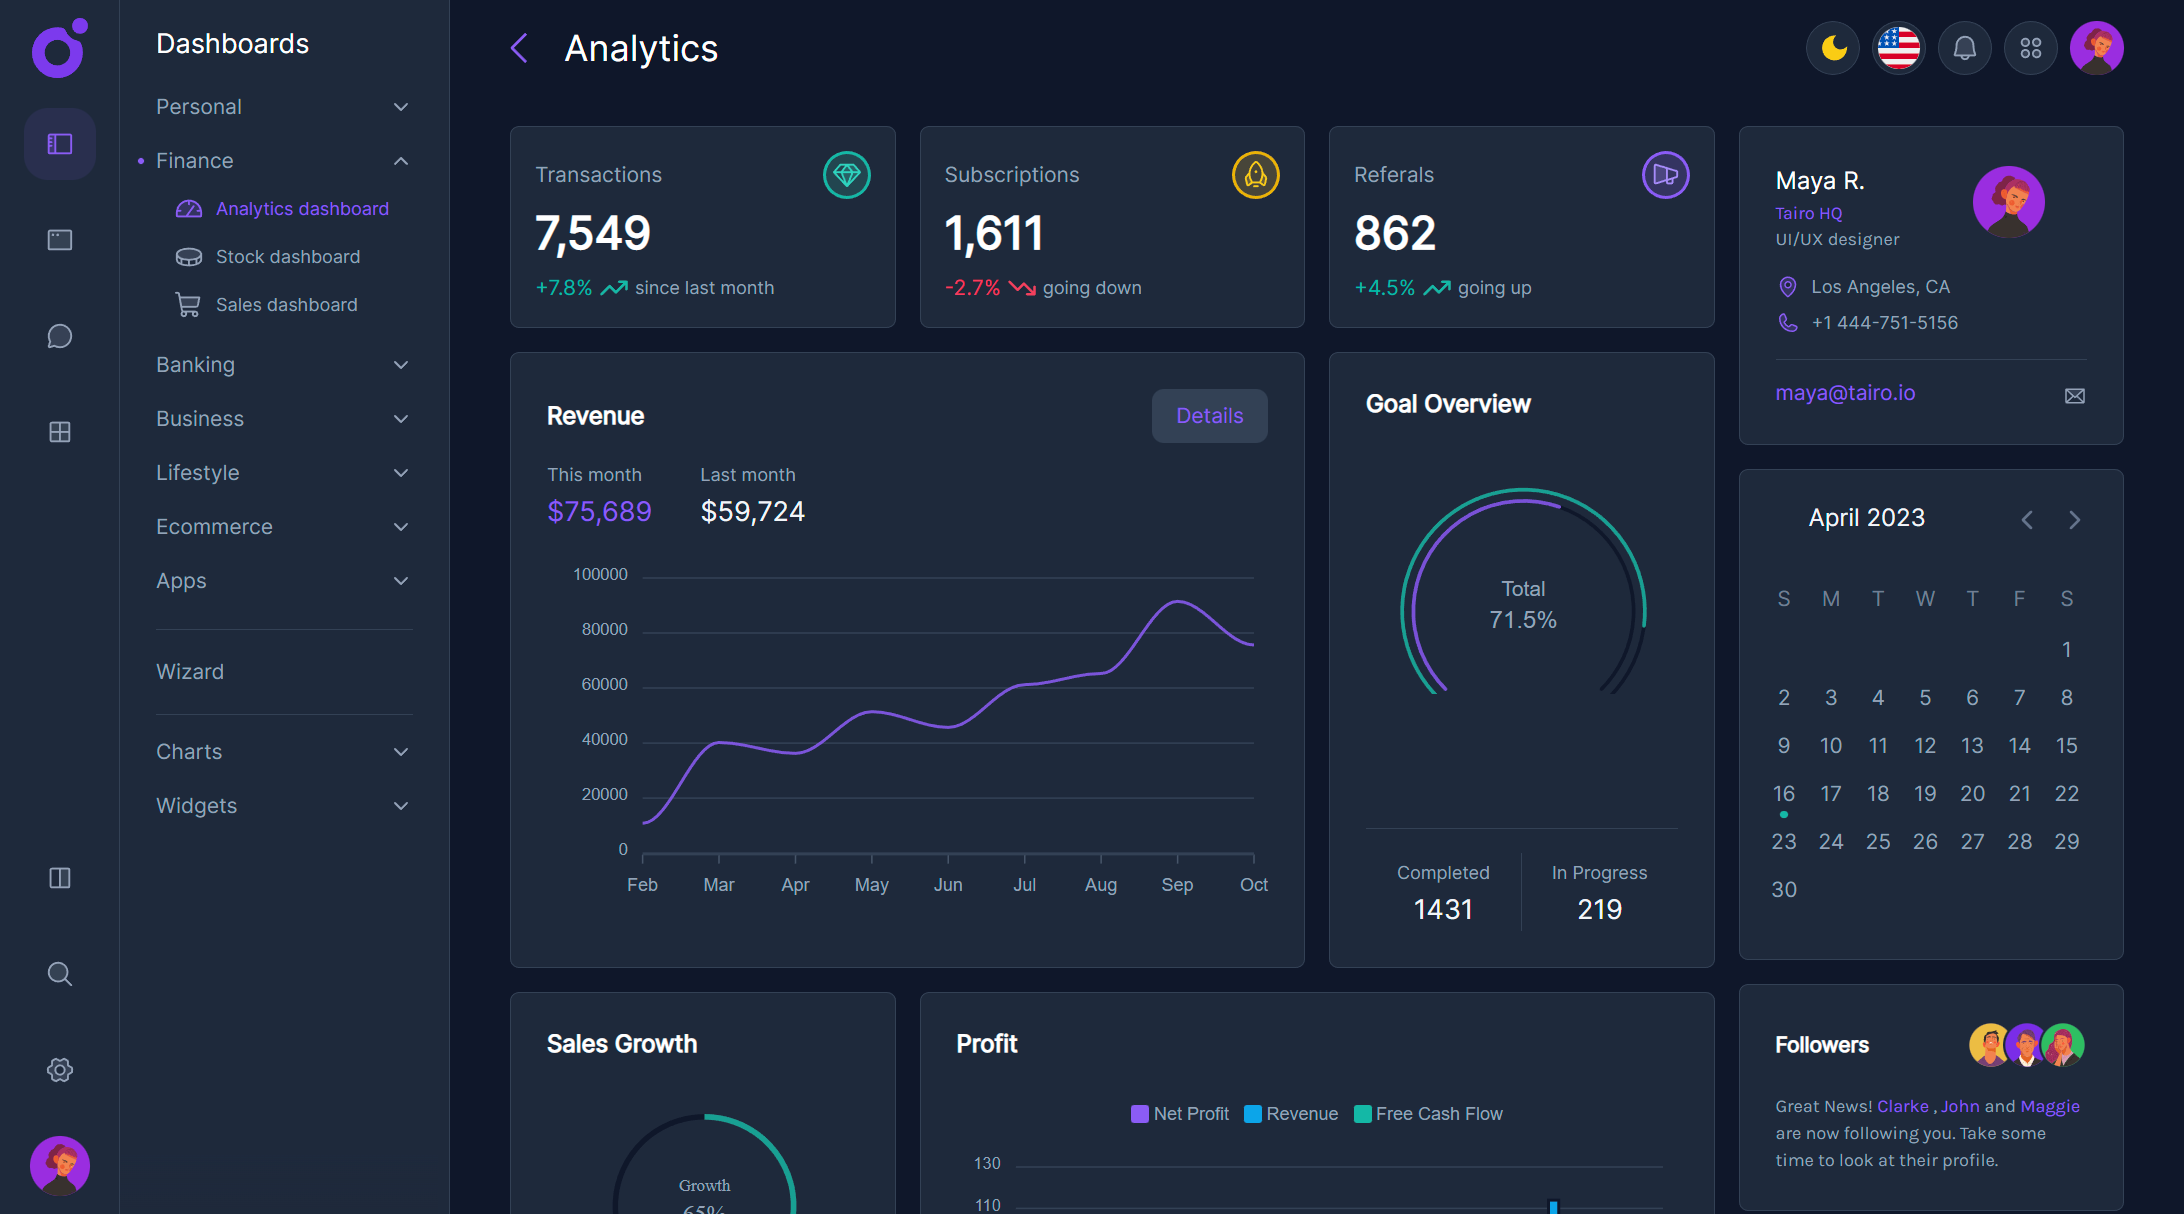 Tairo - Analytics dashboard